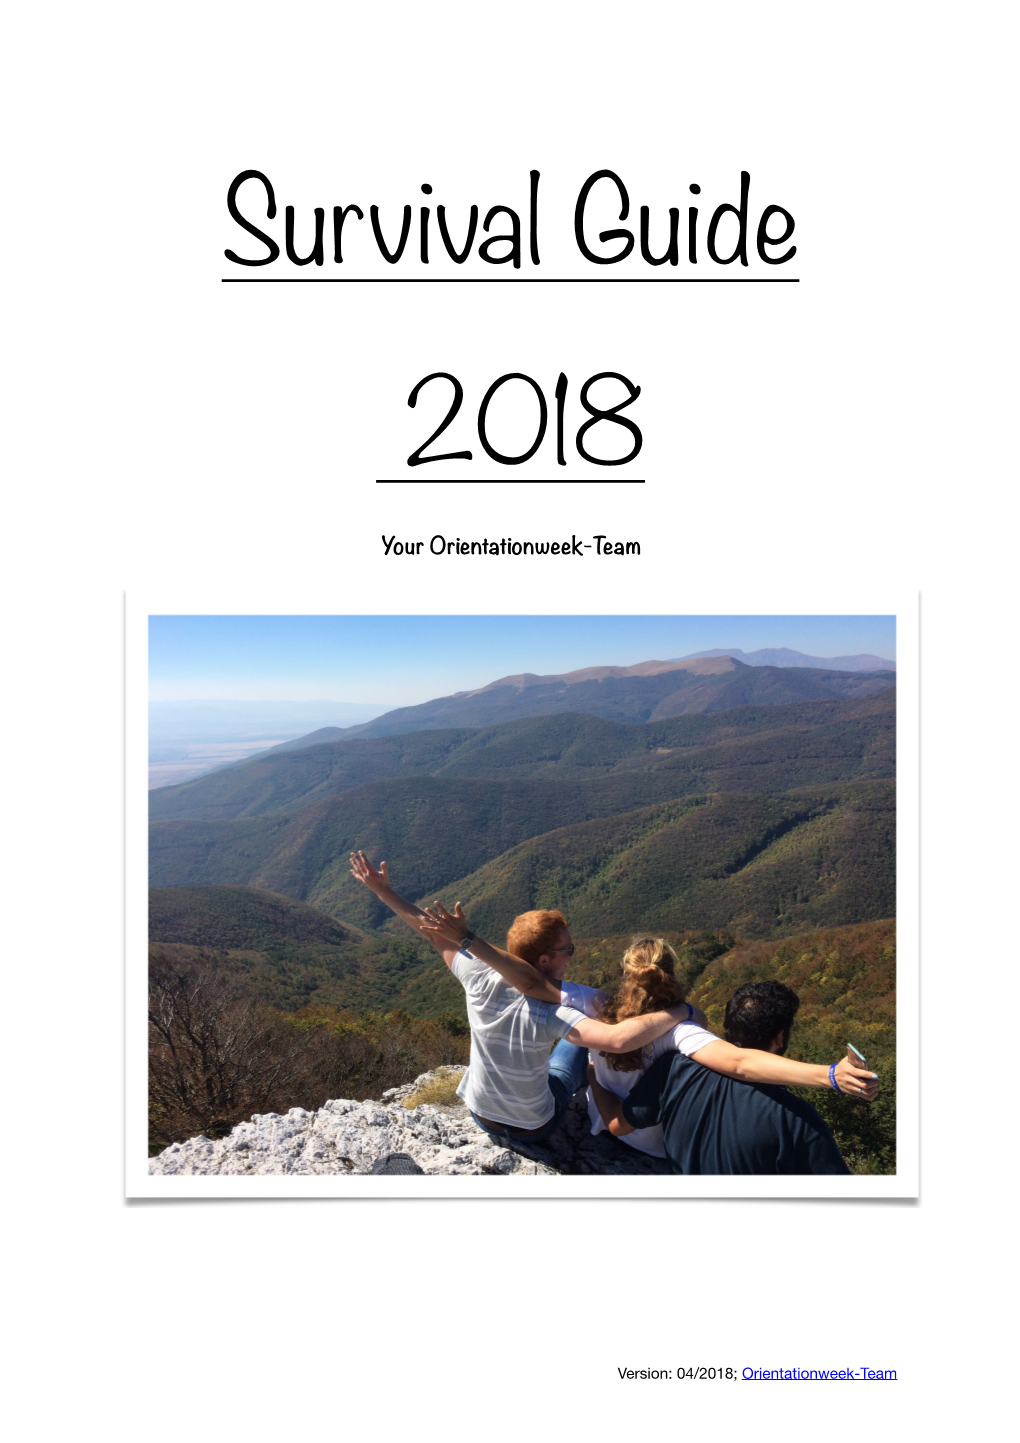 Survival Guide April 2018